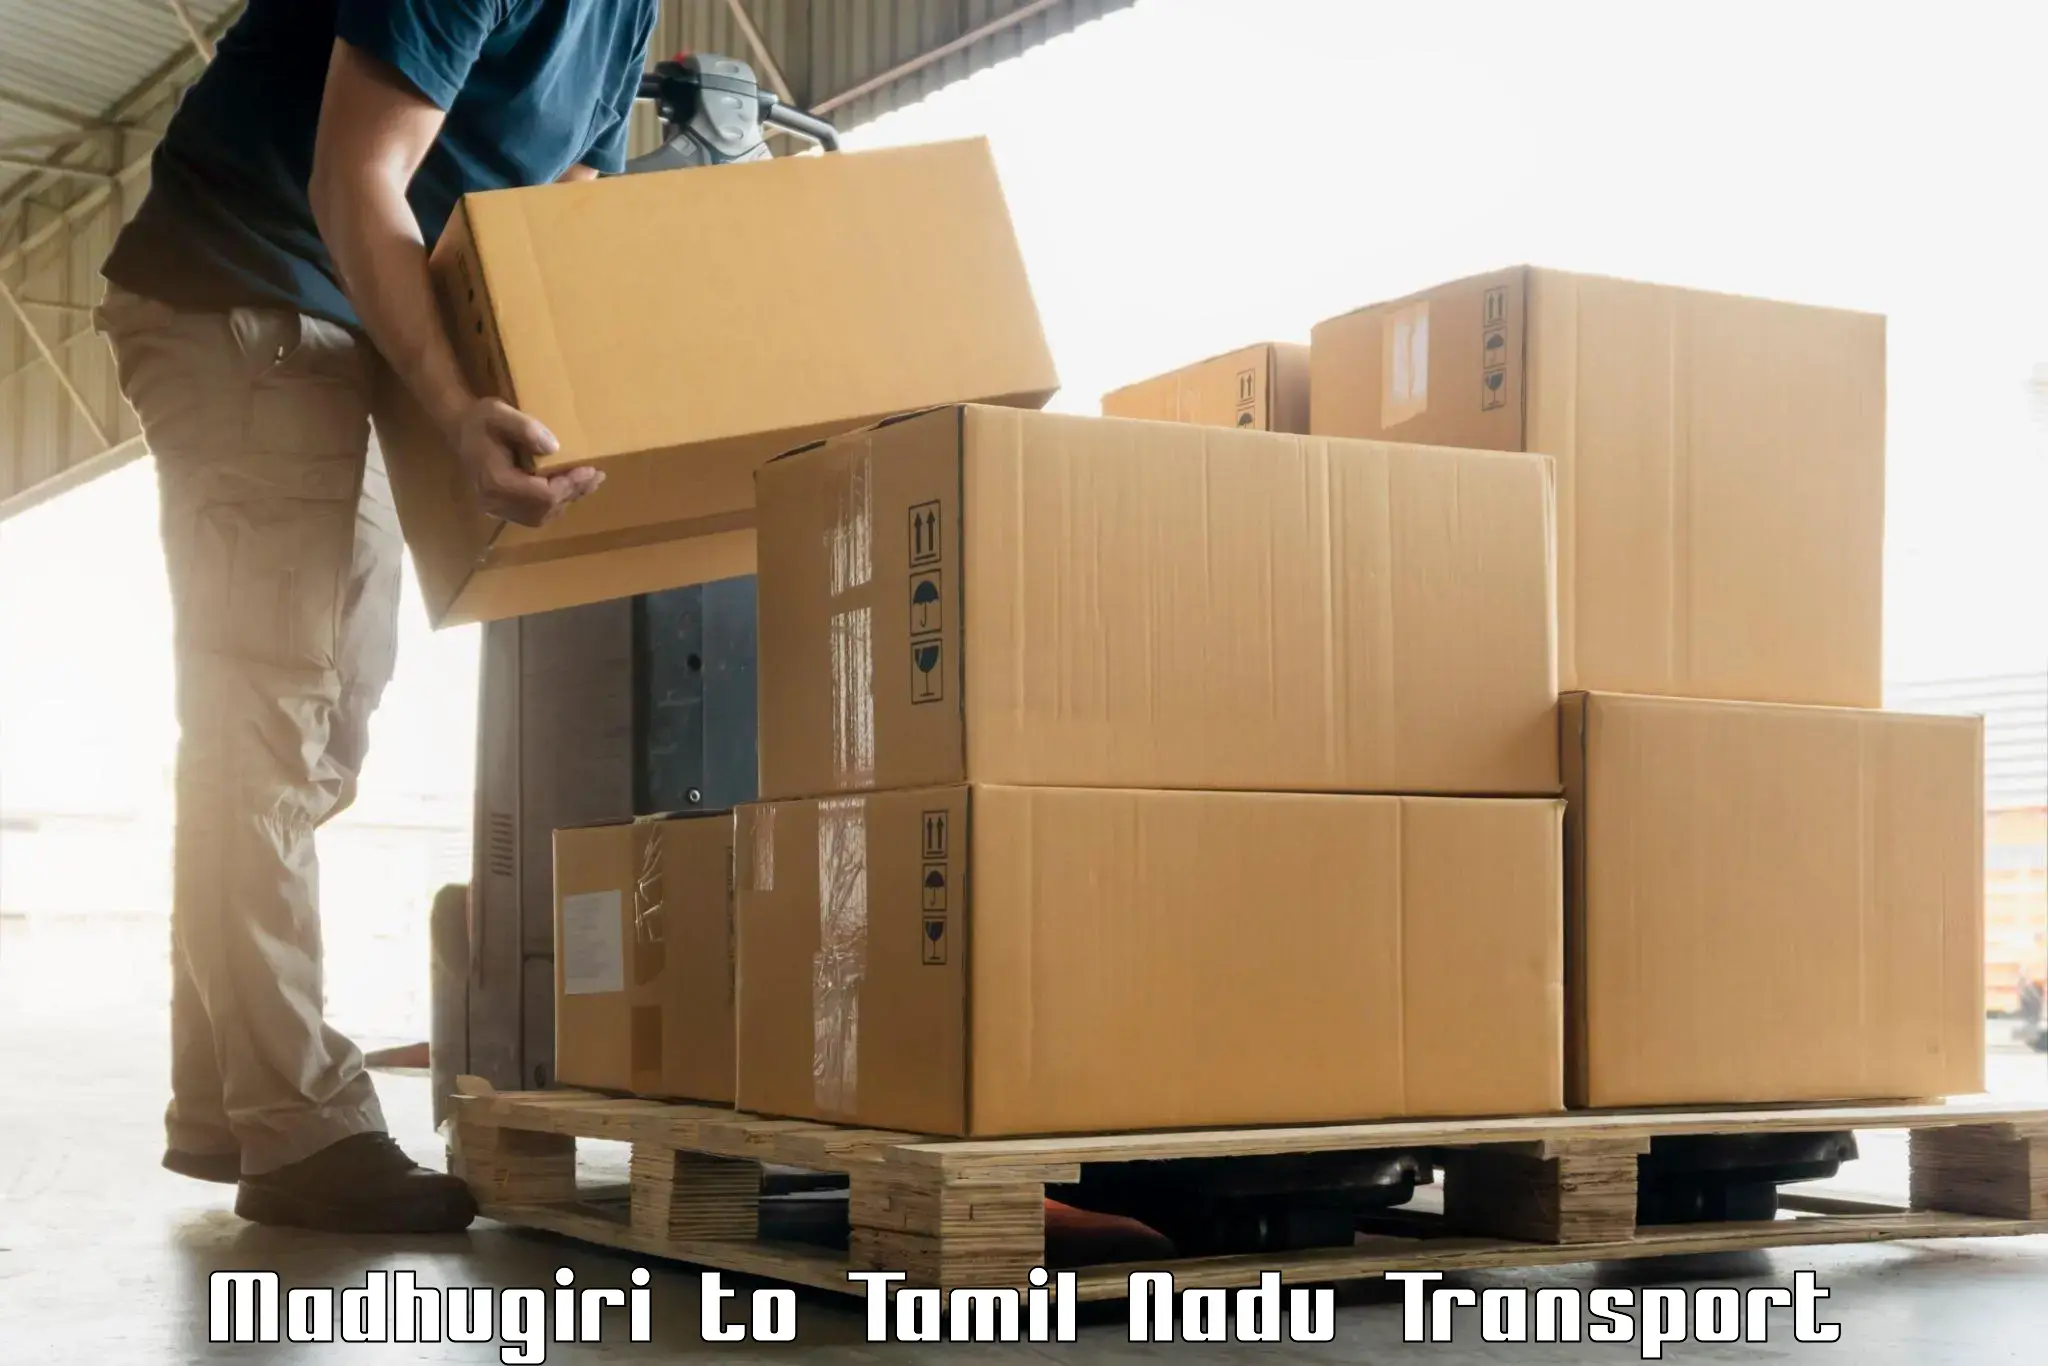 Daily transport service in Madhugiri to Usilampatti